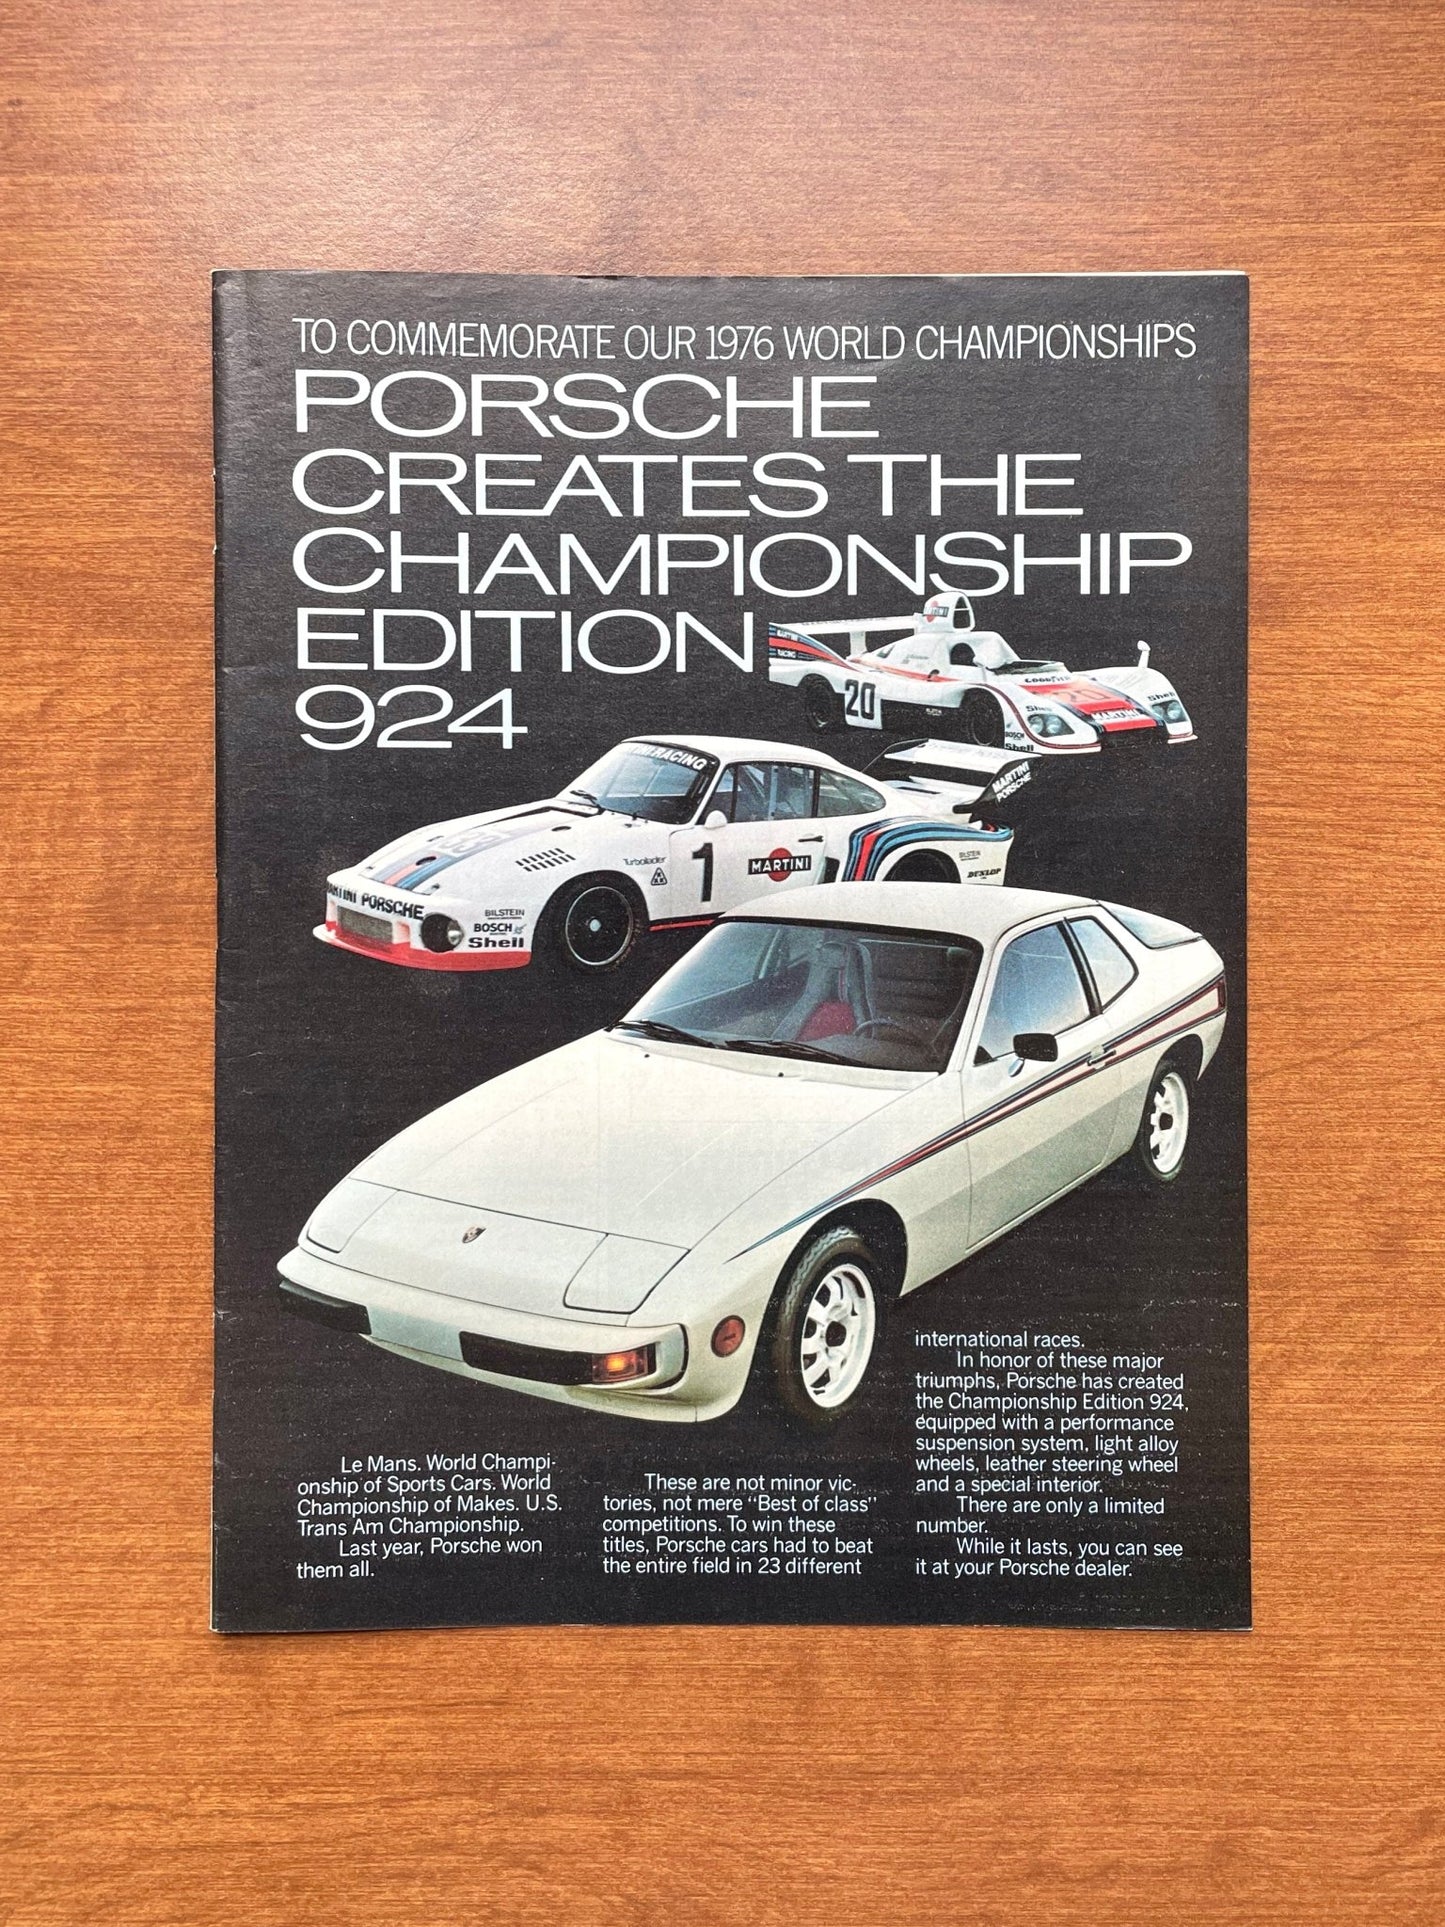 1977 Porsche Championship Edition 924 Advertisement